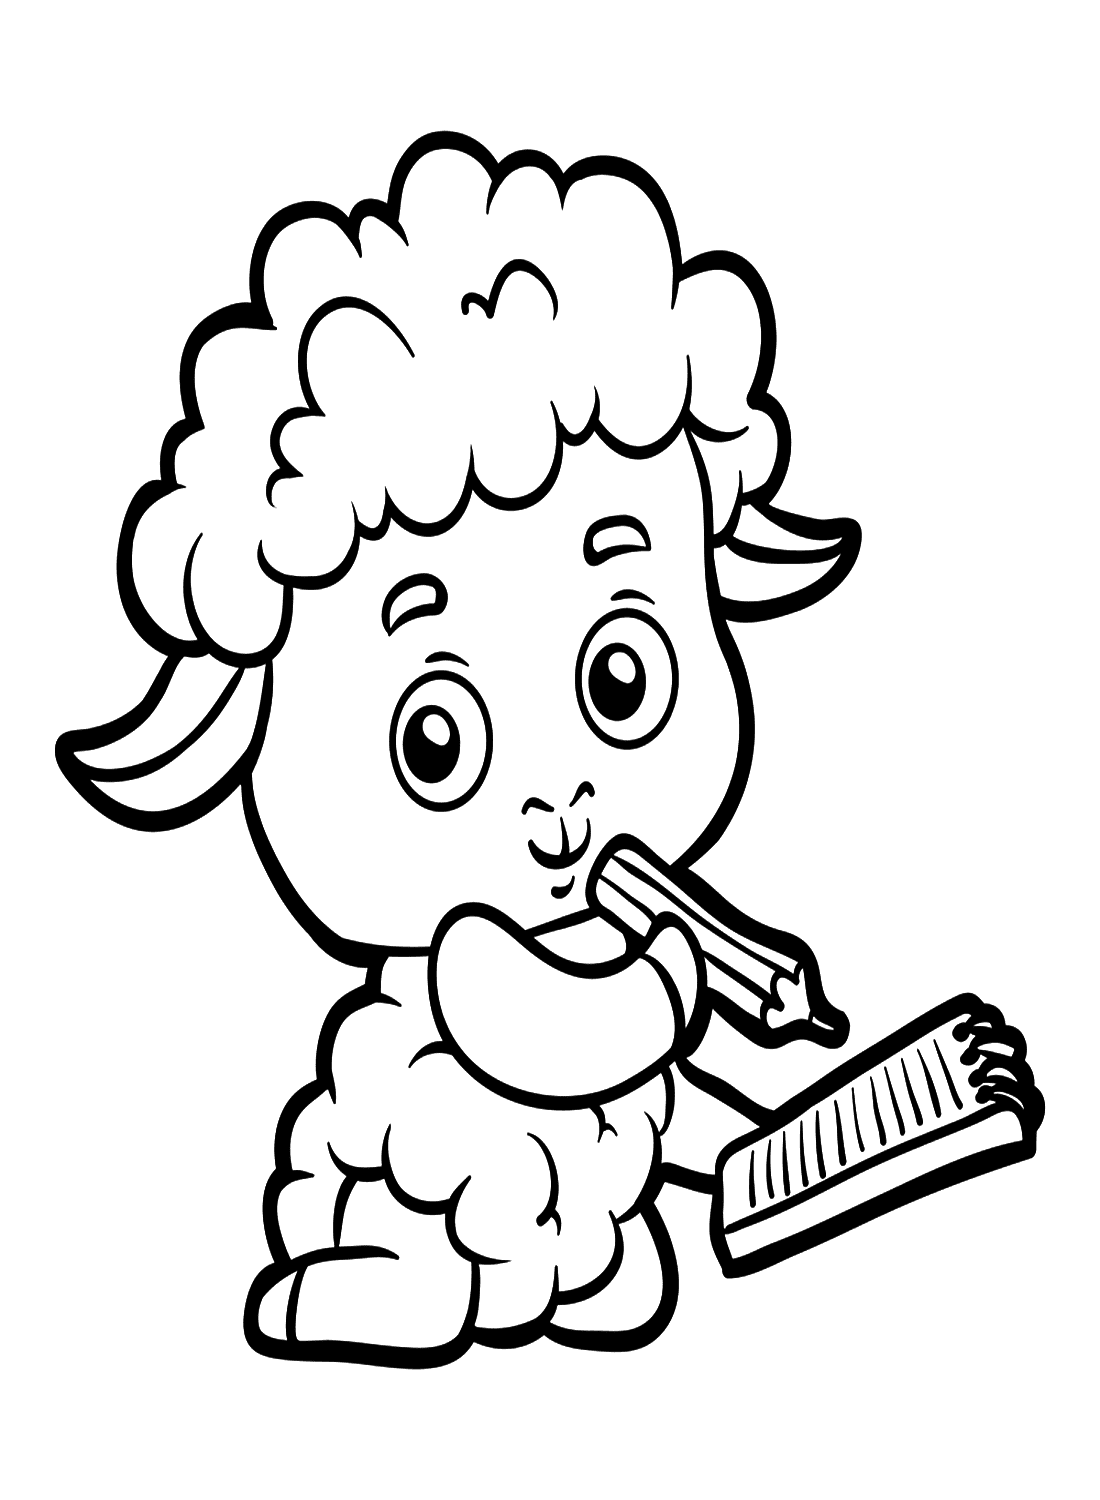 Agnello che scrive con una matita di Lamb